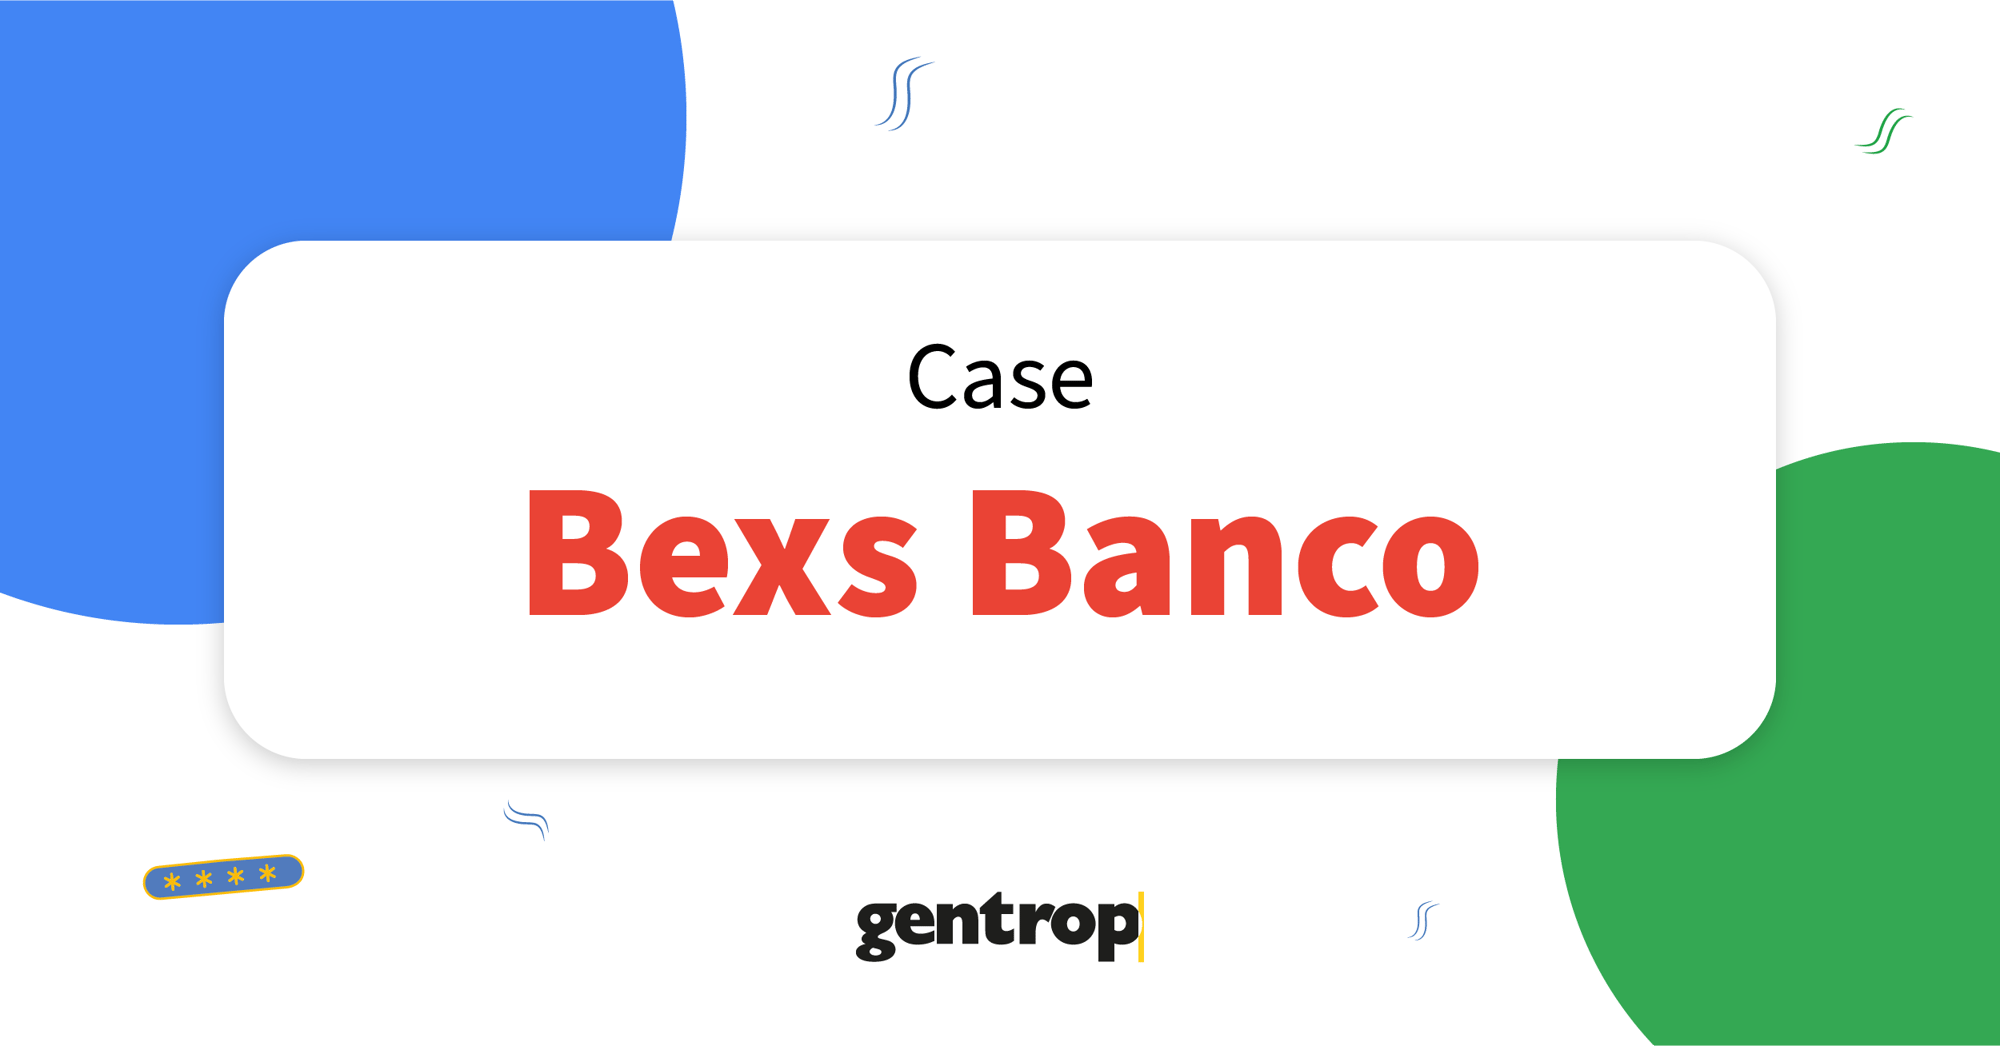 Bexs Banco